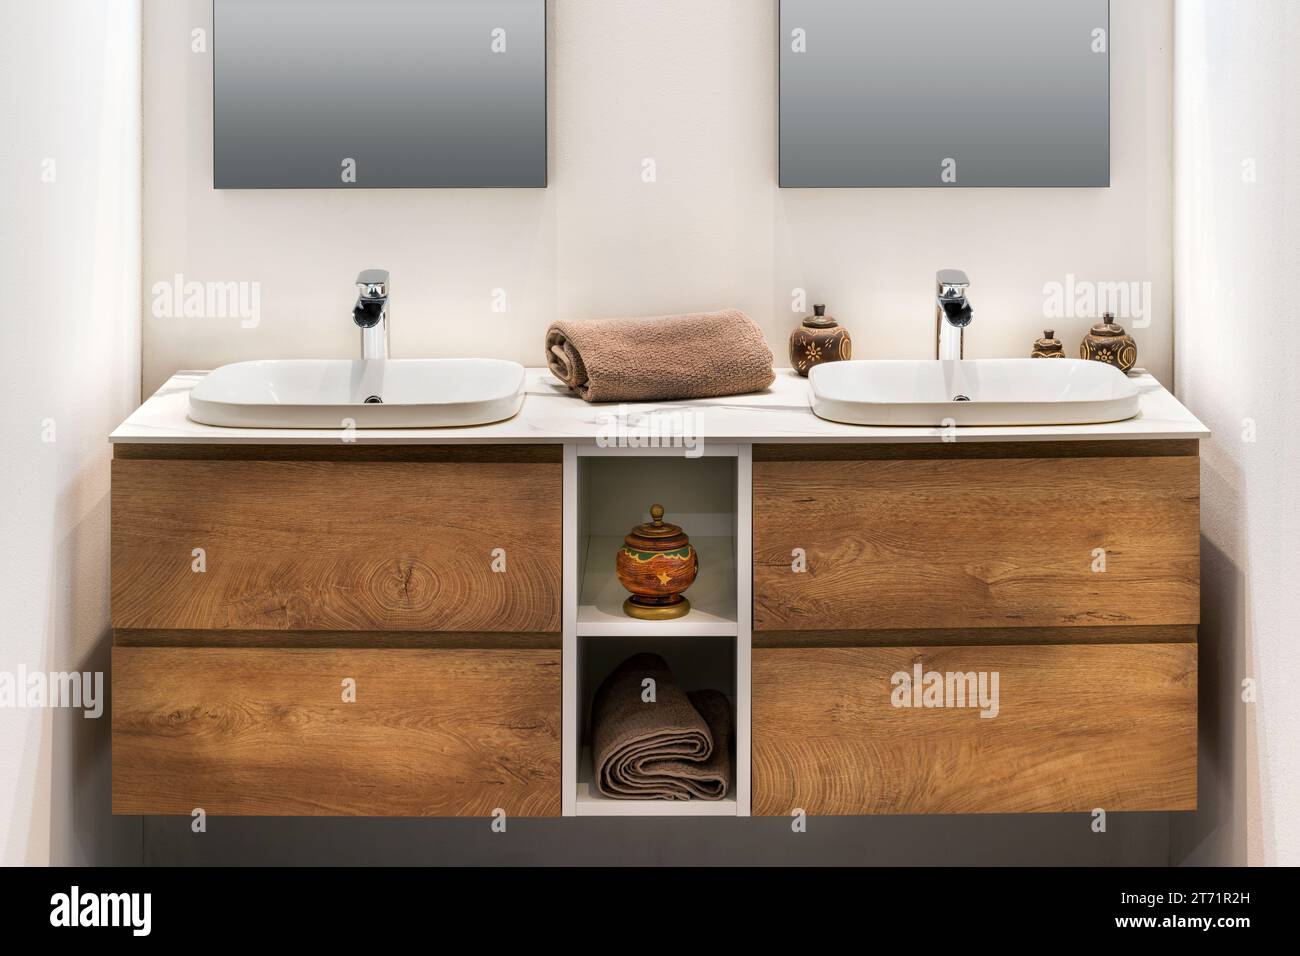 Das Innere des modernen, minimalen Badezimmers mit zwei weißen Waschbecken, Wasserhähnen, Handtuch auf Holzschrankregalen mit Räucherbrenner Vase, während mirro Stockfoto